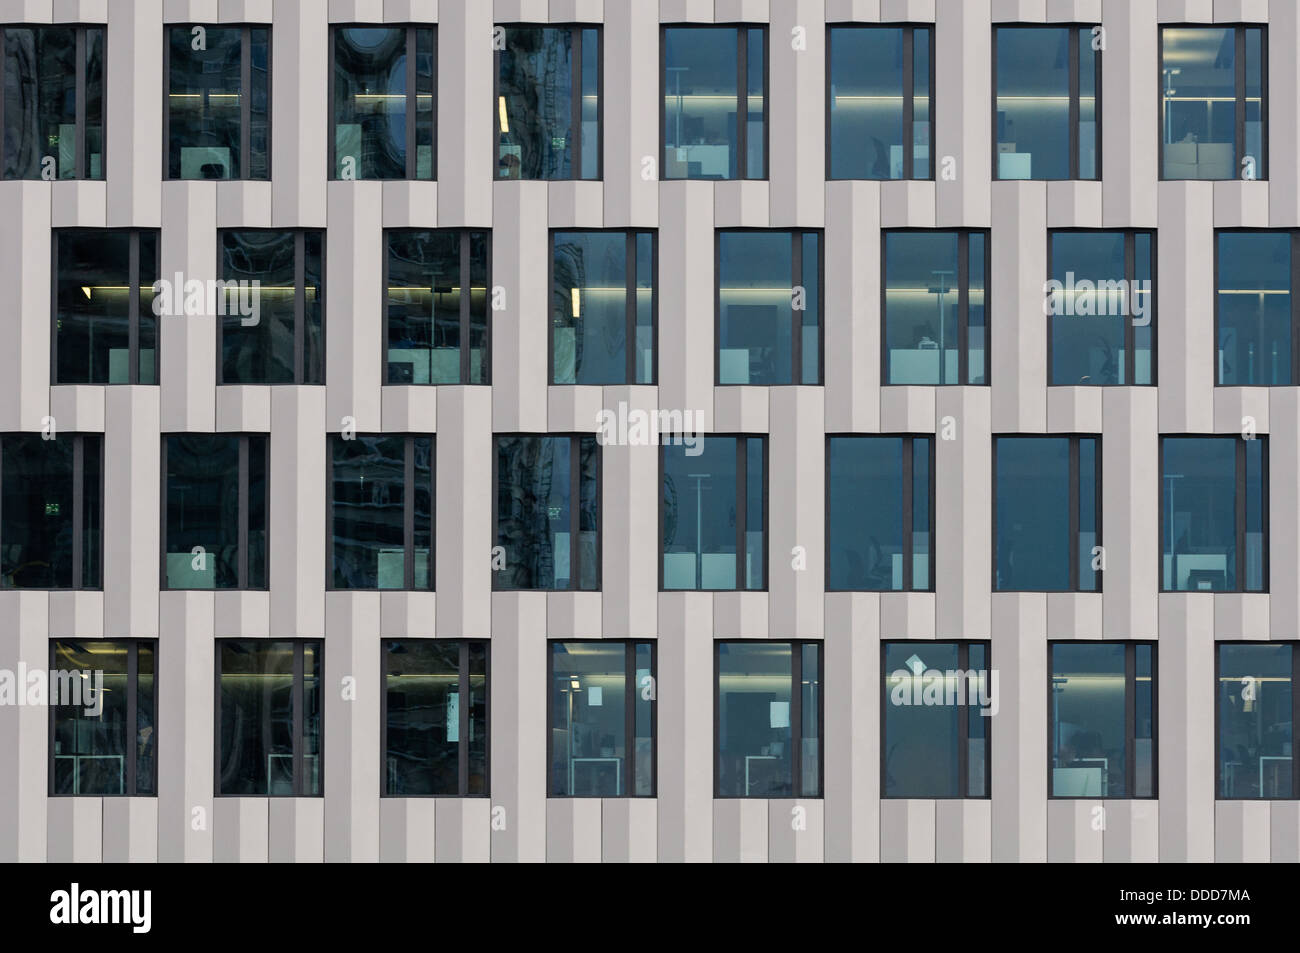 Office building facade. Zurich, Switzerland. Stock Photo